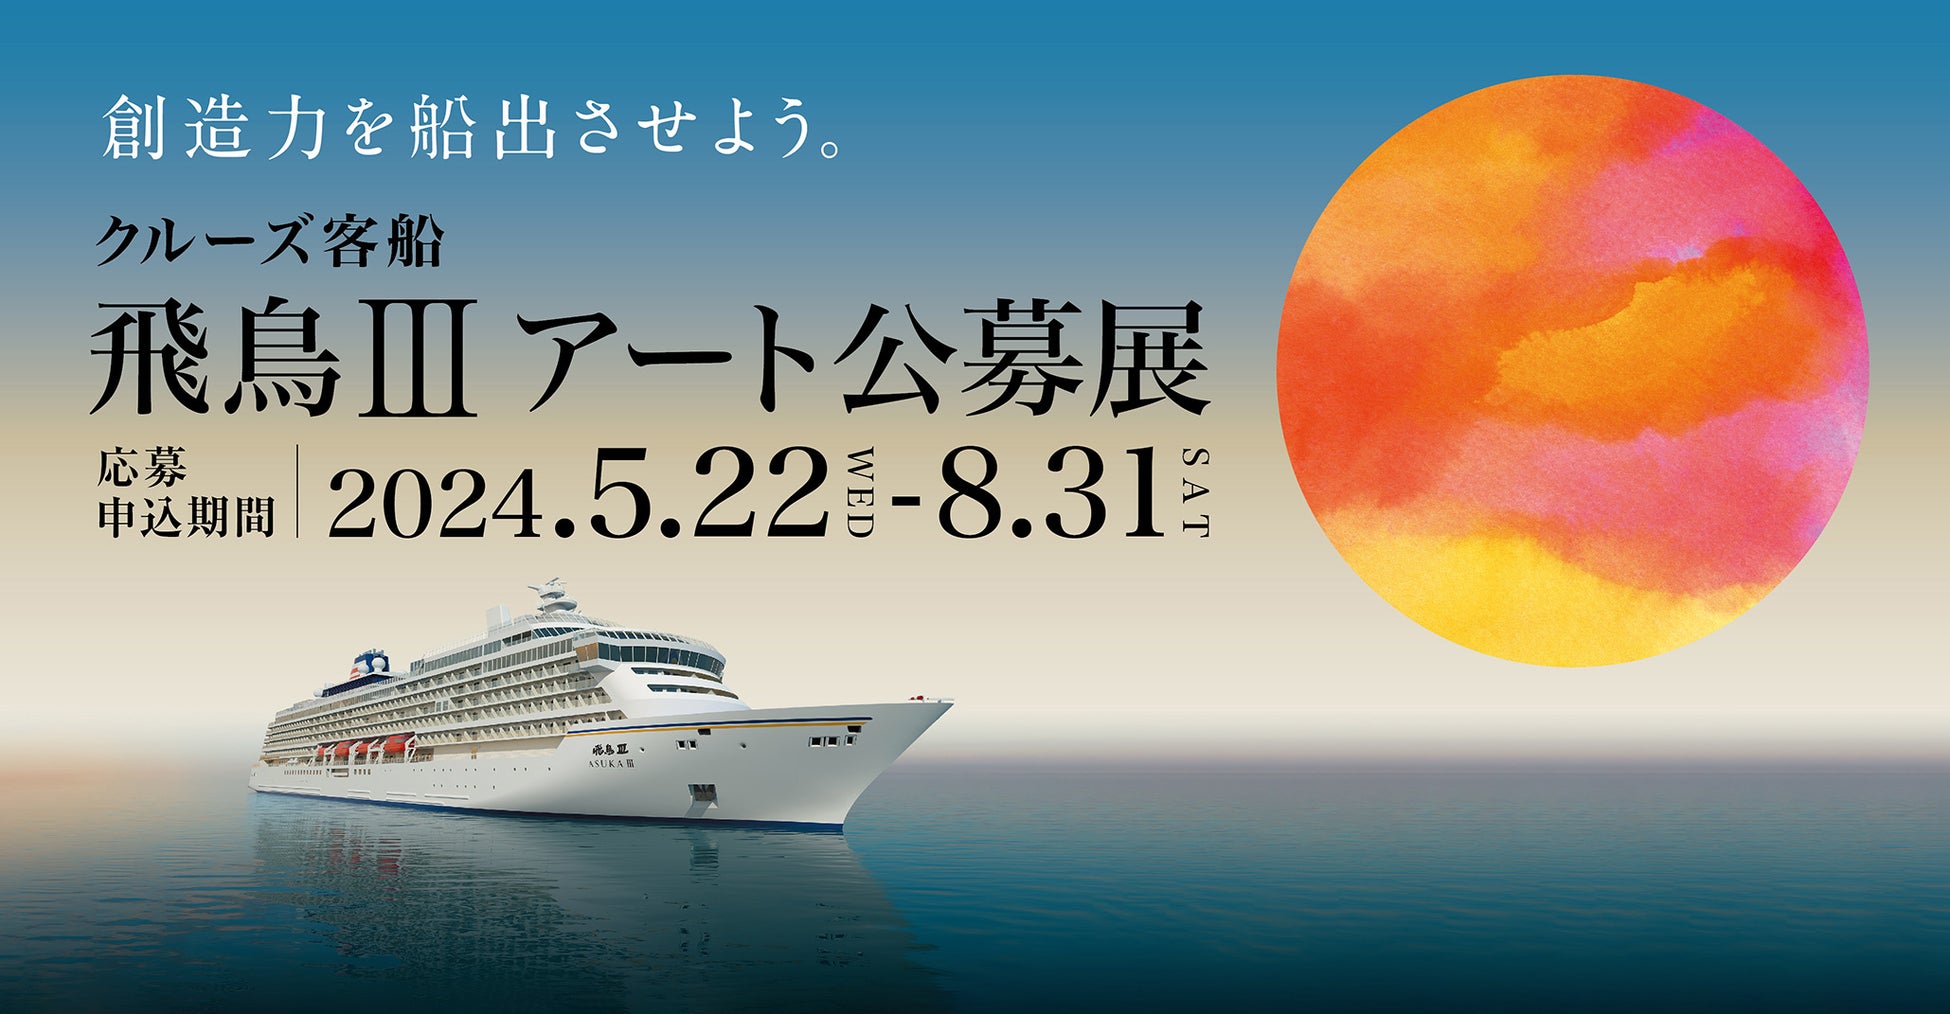 神戸空港 ～ 神戸ベイシェラトンホテル ～ ユニバーサル・スタジオ・ジャパンを結ぶバスの運行を開始します